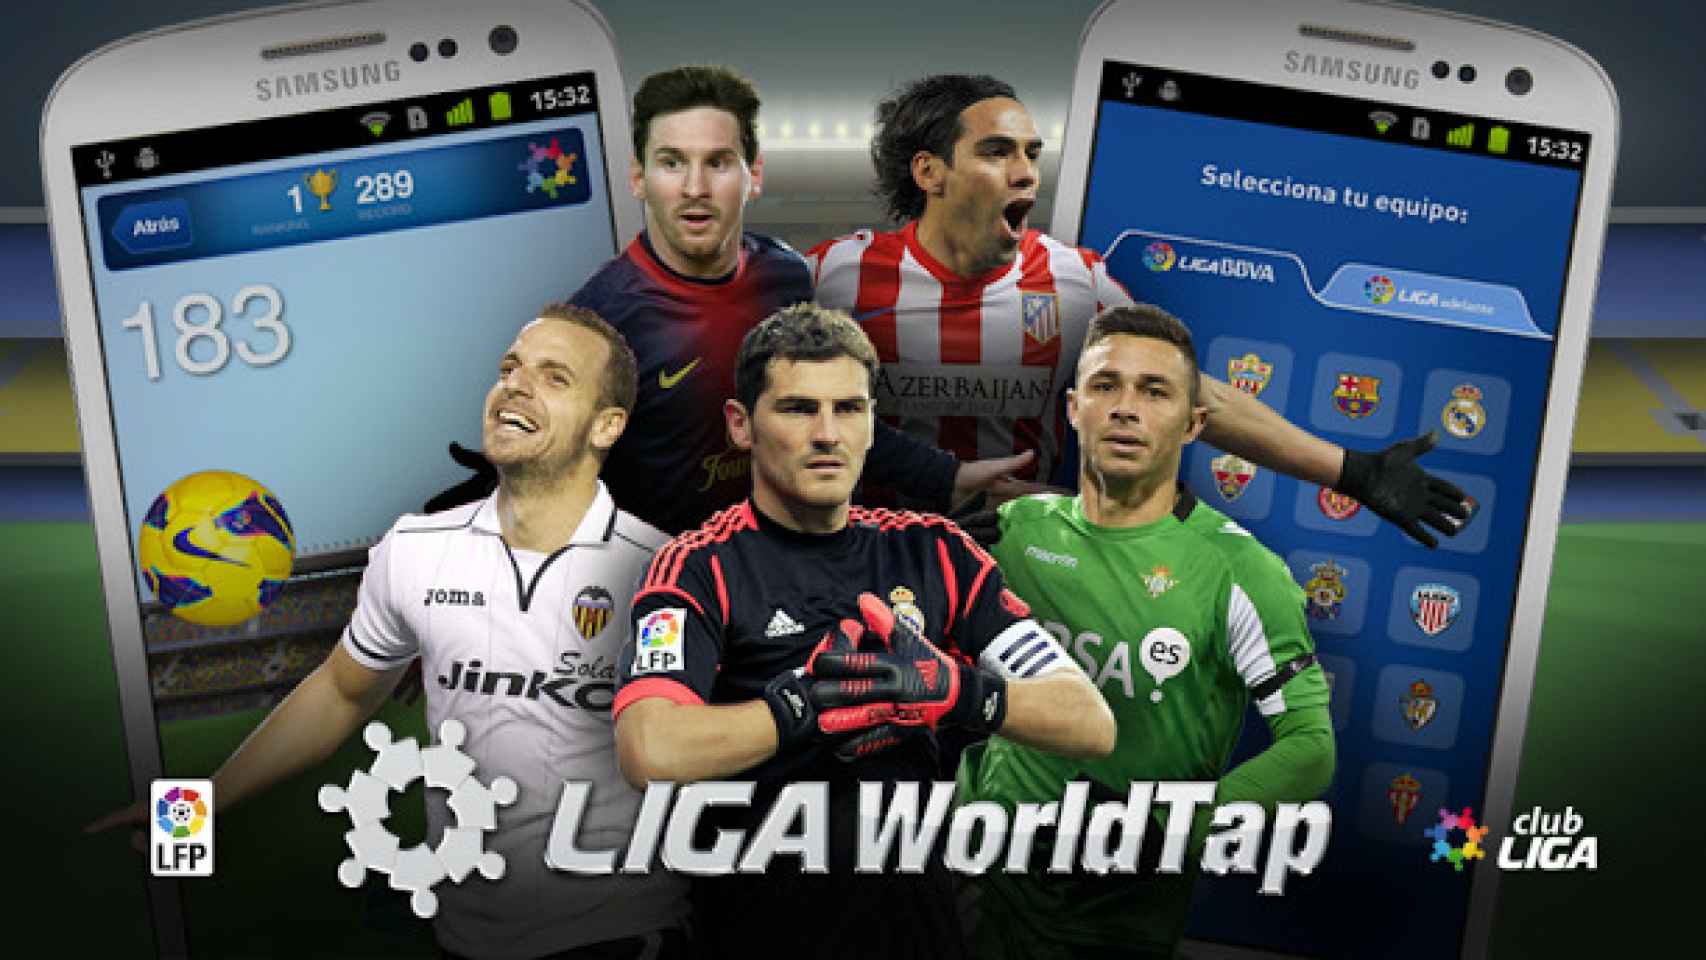 La LFP anuncia su aplicación oficial Liga WorldTap en Android